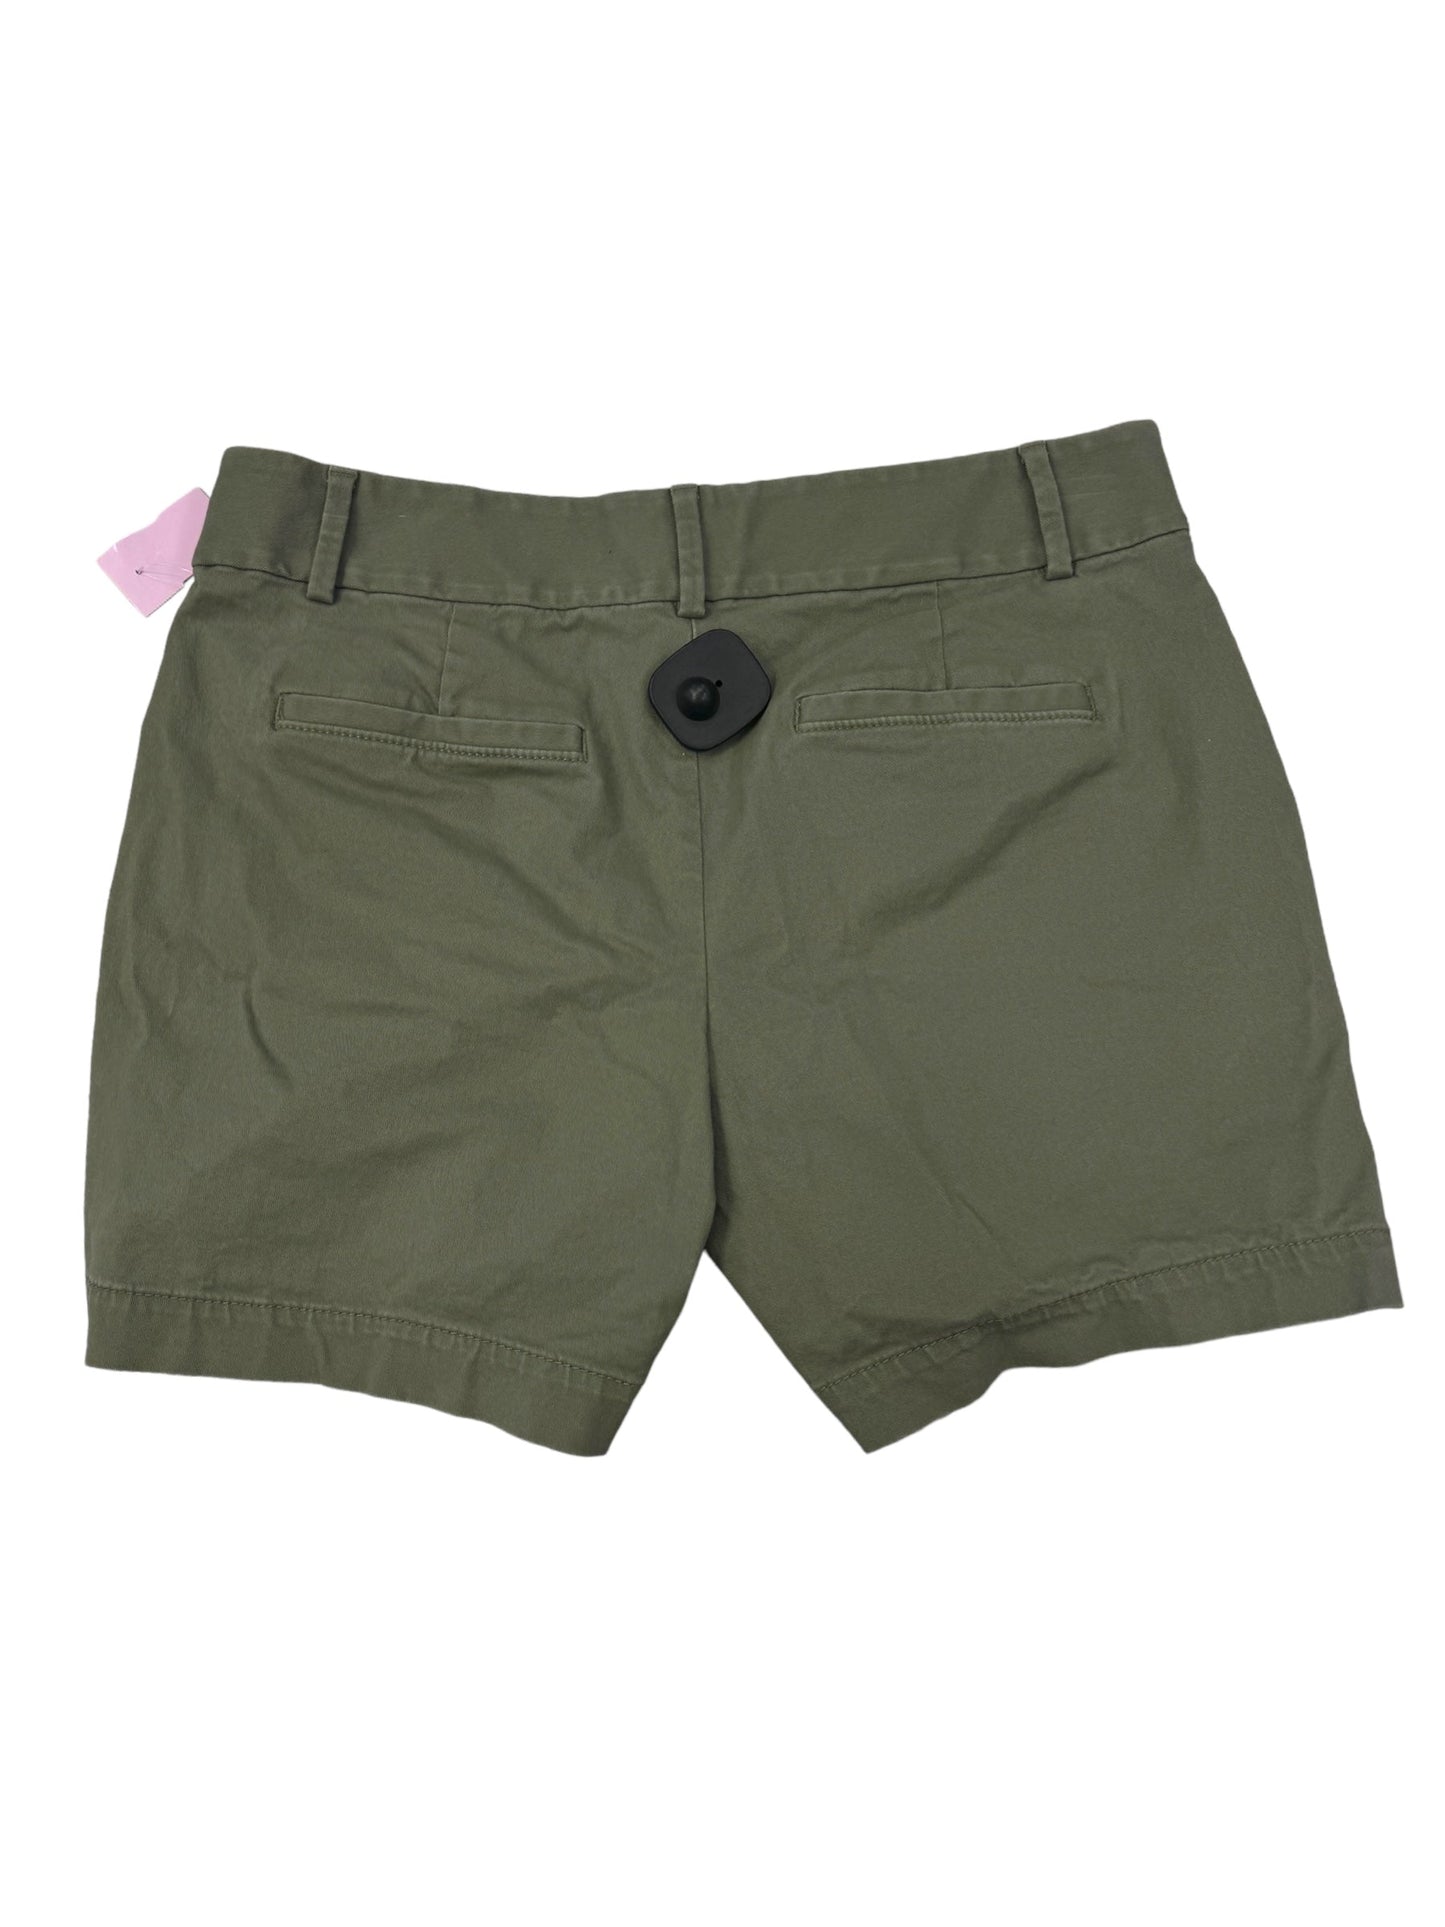 Green Shorts Loft, Size 8